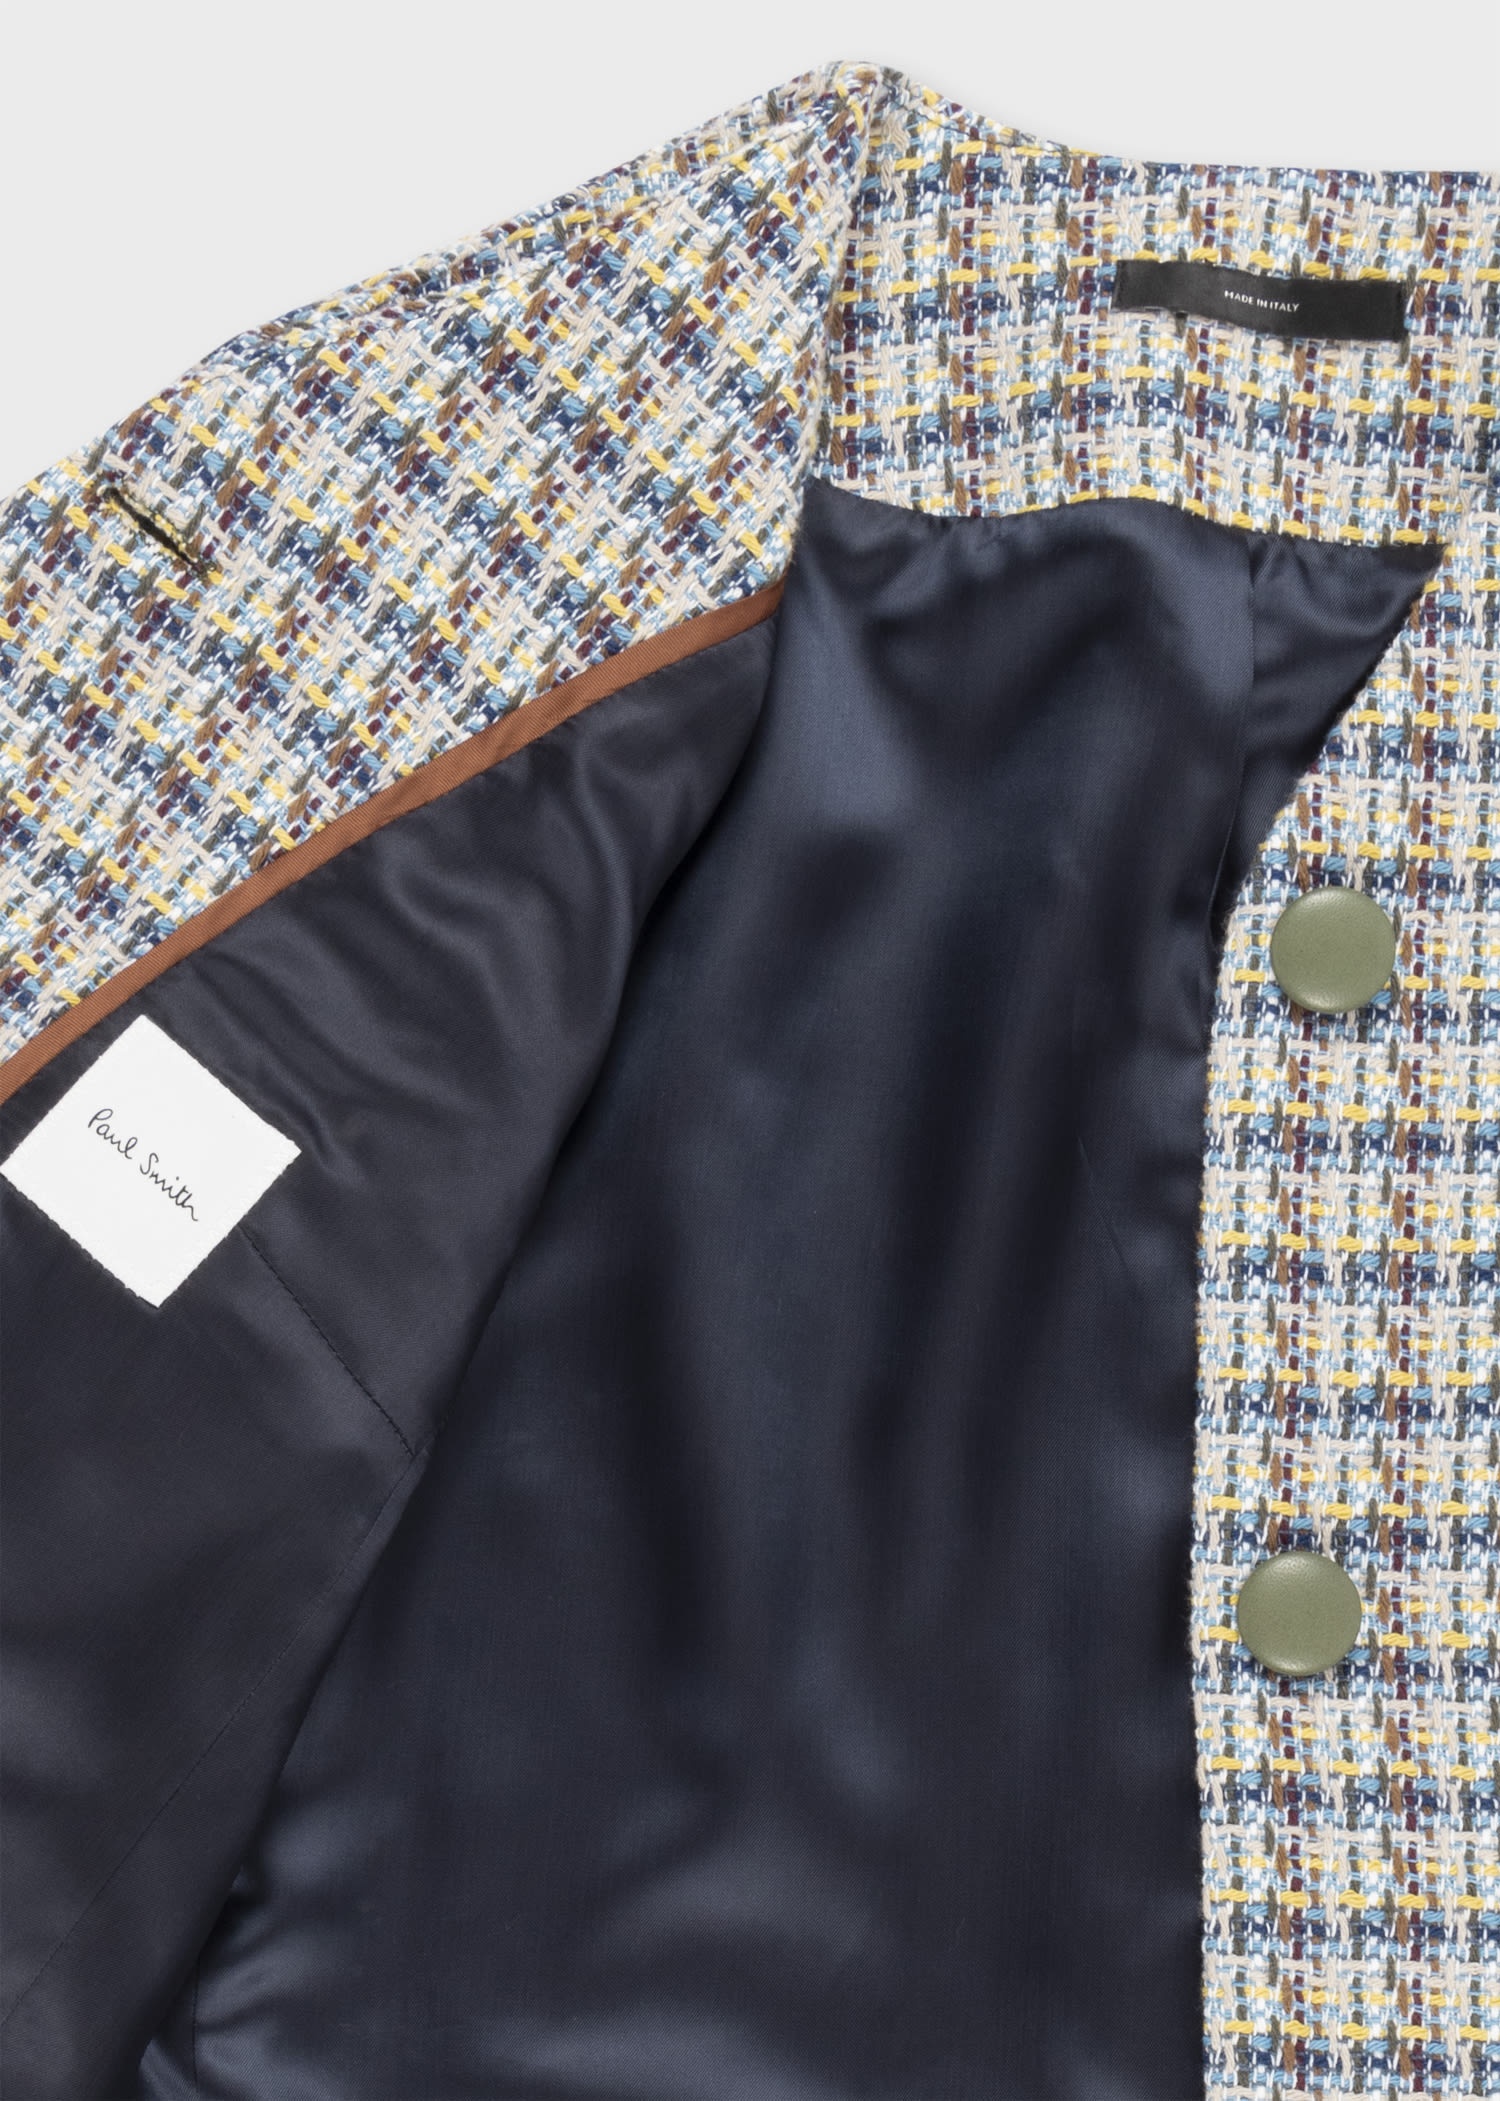 Cotton Tweed Skirt Suit - 2